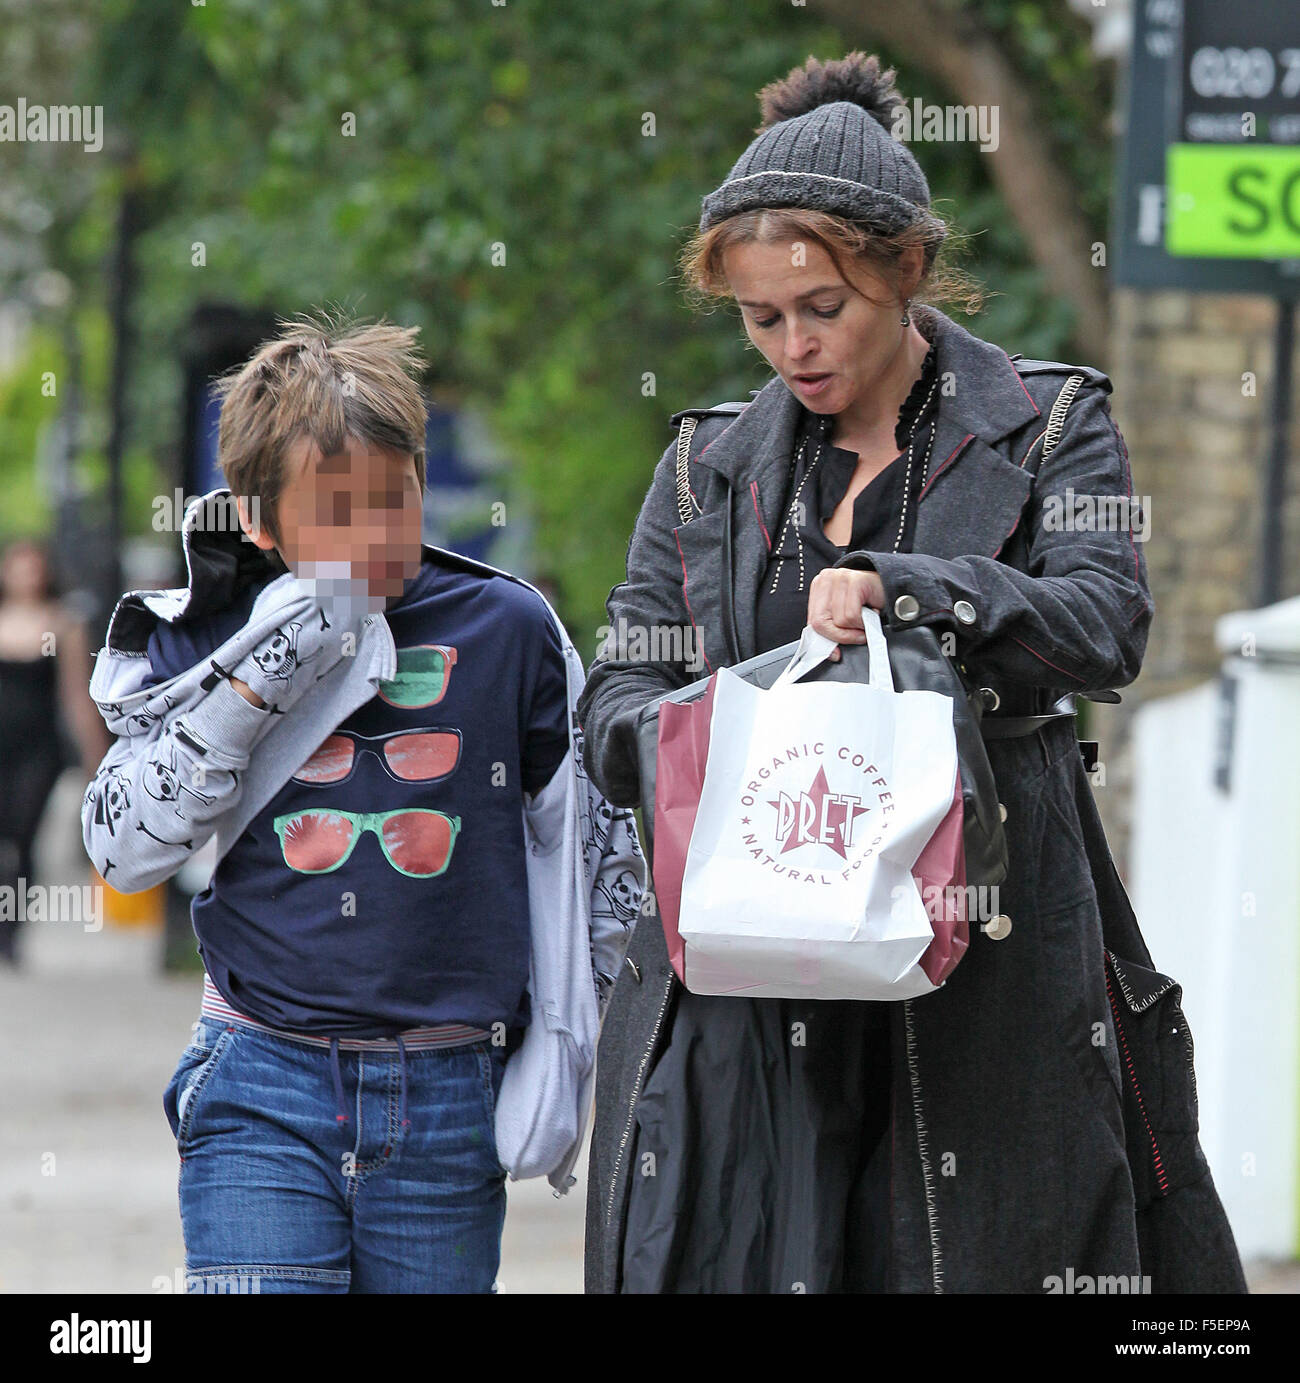 Helena Bonham Carter en Londres con hijo Billy Burton Featuring: Helena Bonham Carter, Billy Raymond Burton donde: Londres, Reino Unido cuando: 02 Sep 2015 Foto de stock